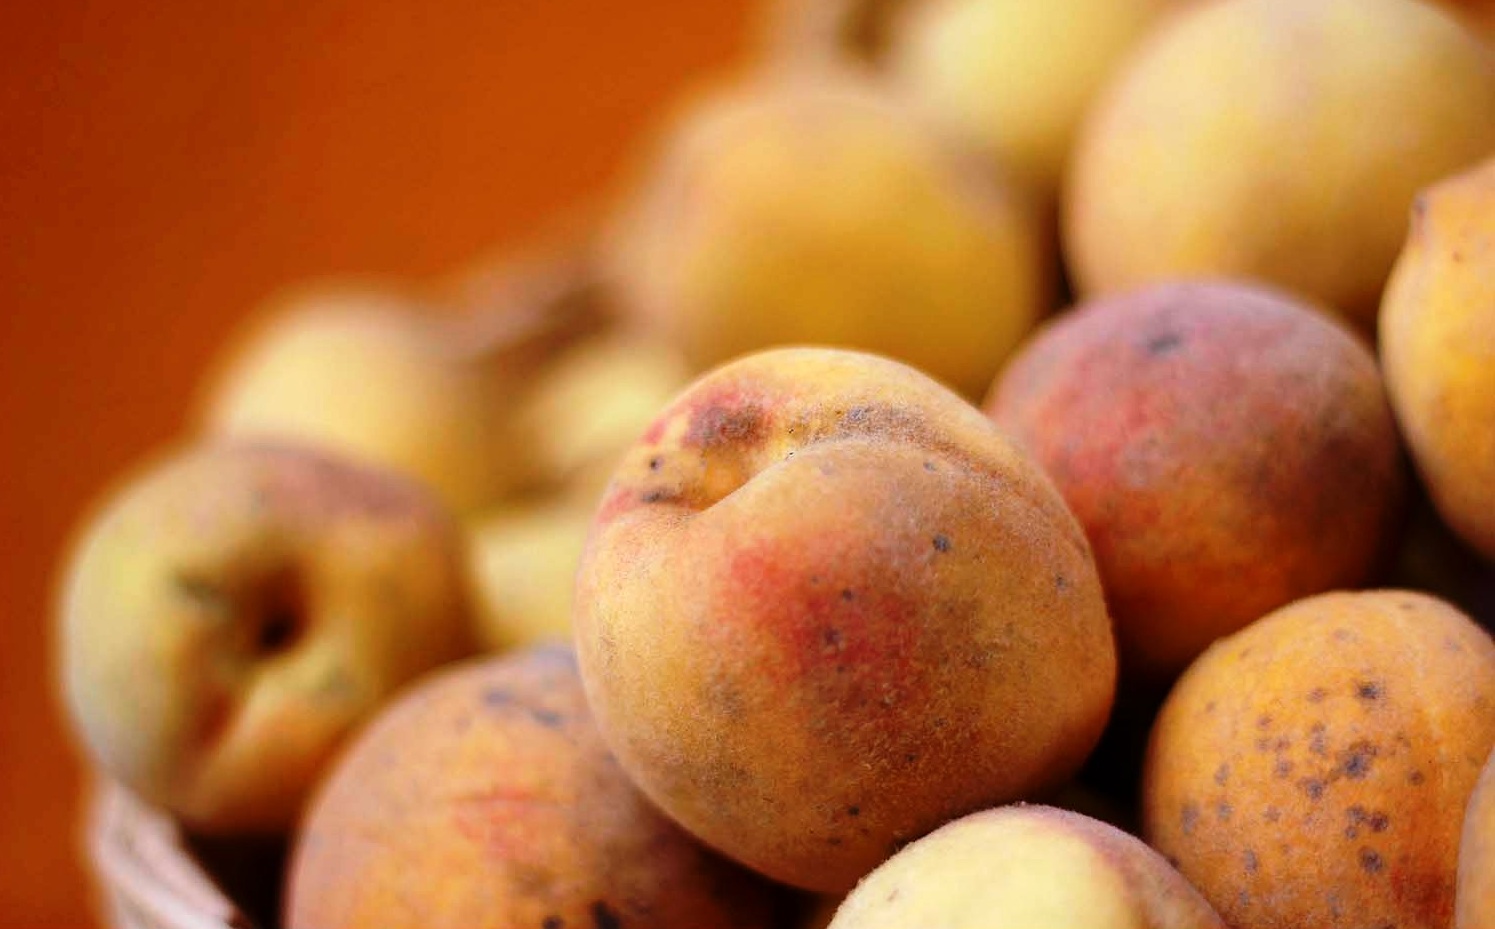 Mosca de la fruta afecta al 50% de la producción de frutales